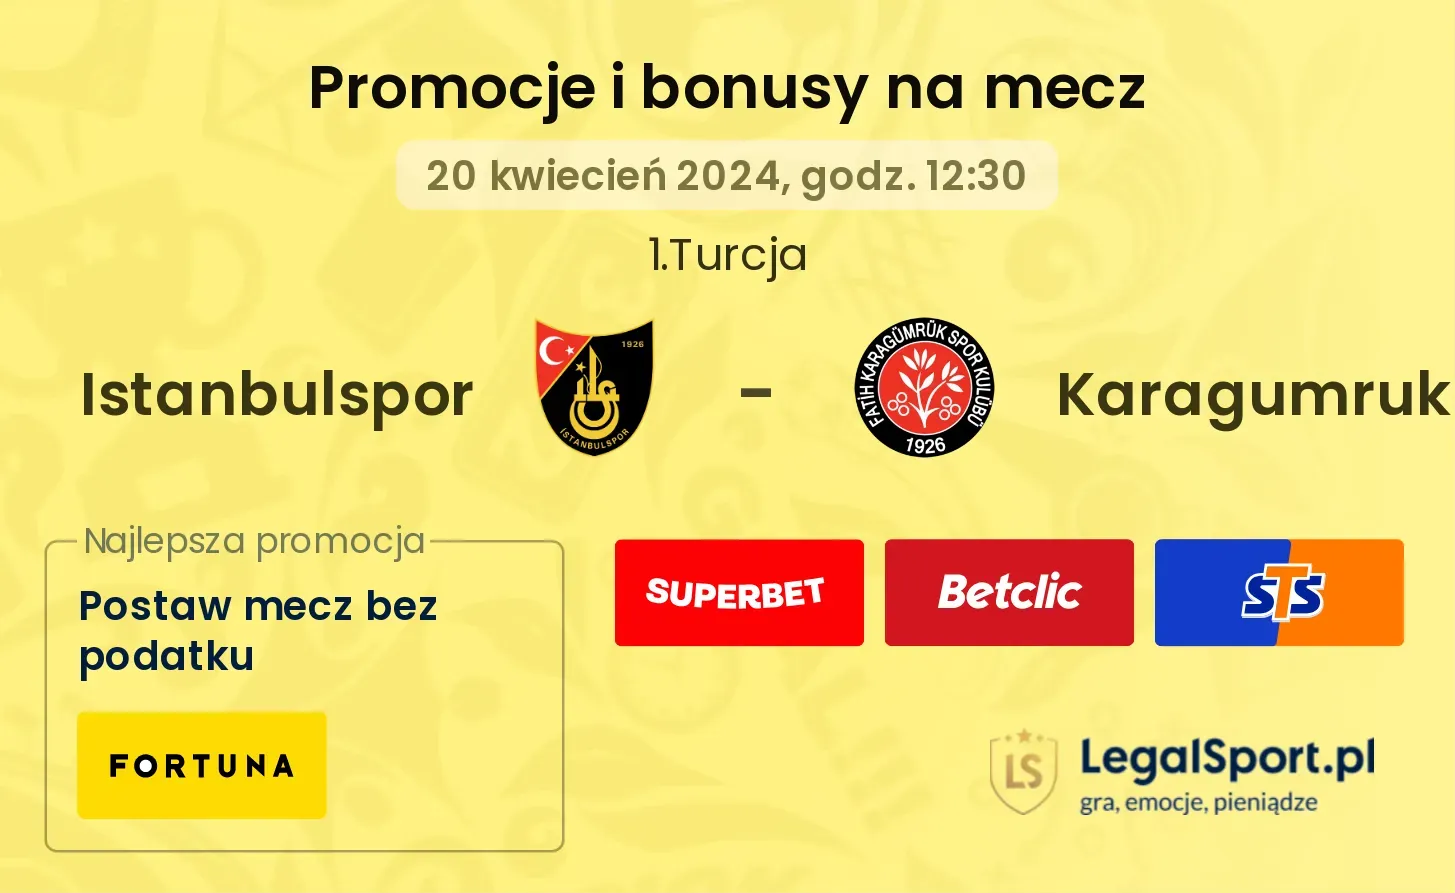 Istanbulspor - Karagumruk promocje bonusy na mecz